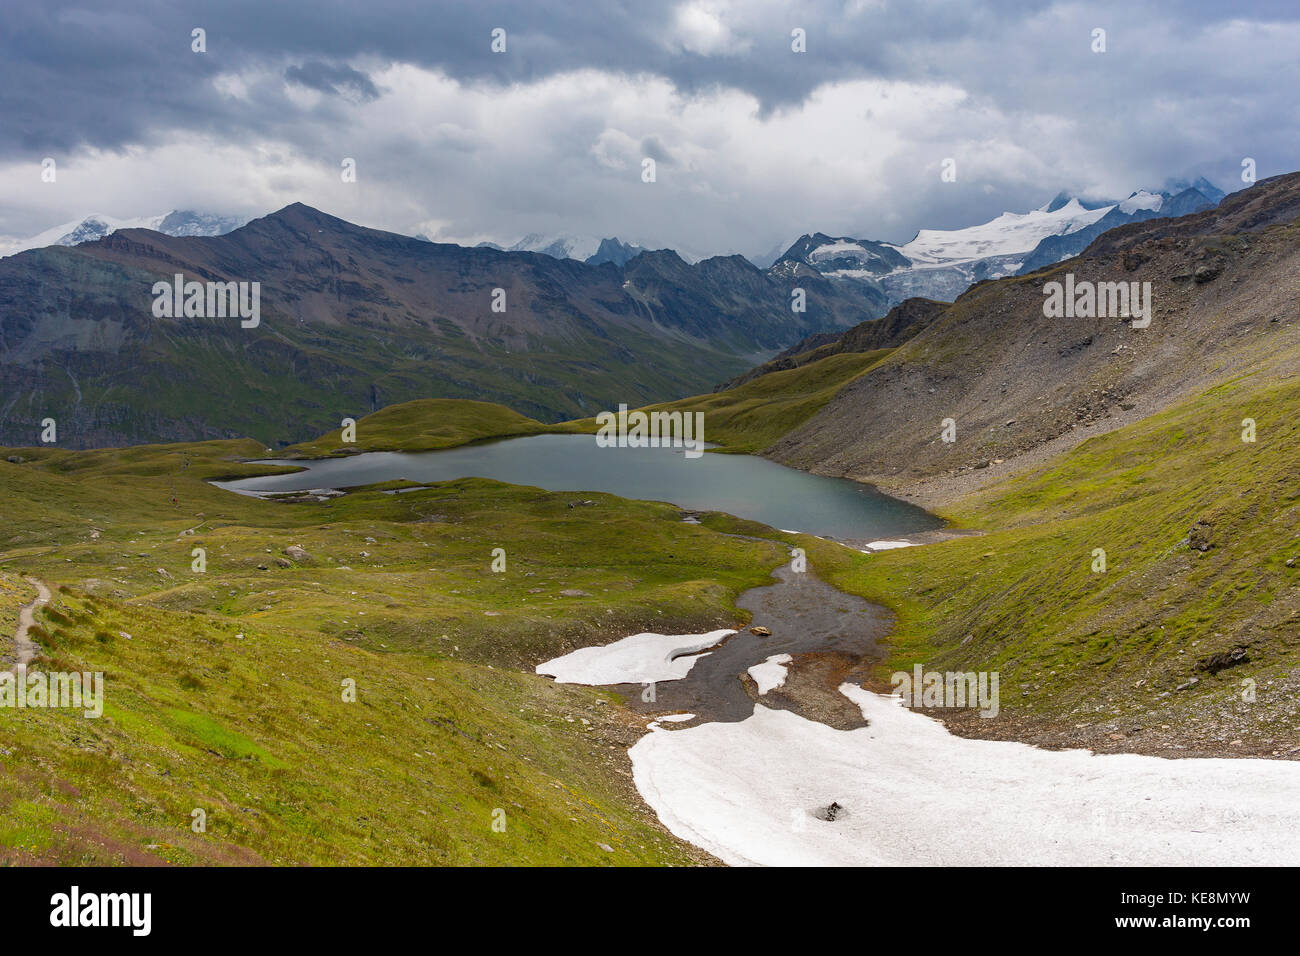 La vallée de Moiry, Suisse - champ de neige et le lac en Alpes Pennines dans le canton du Valais. Banque D'Images